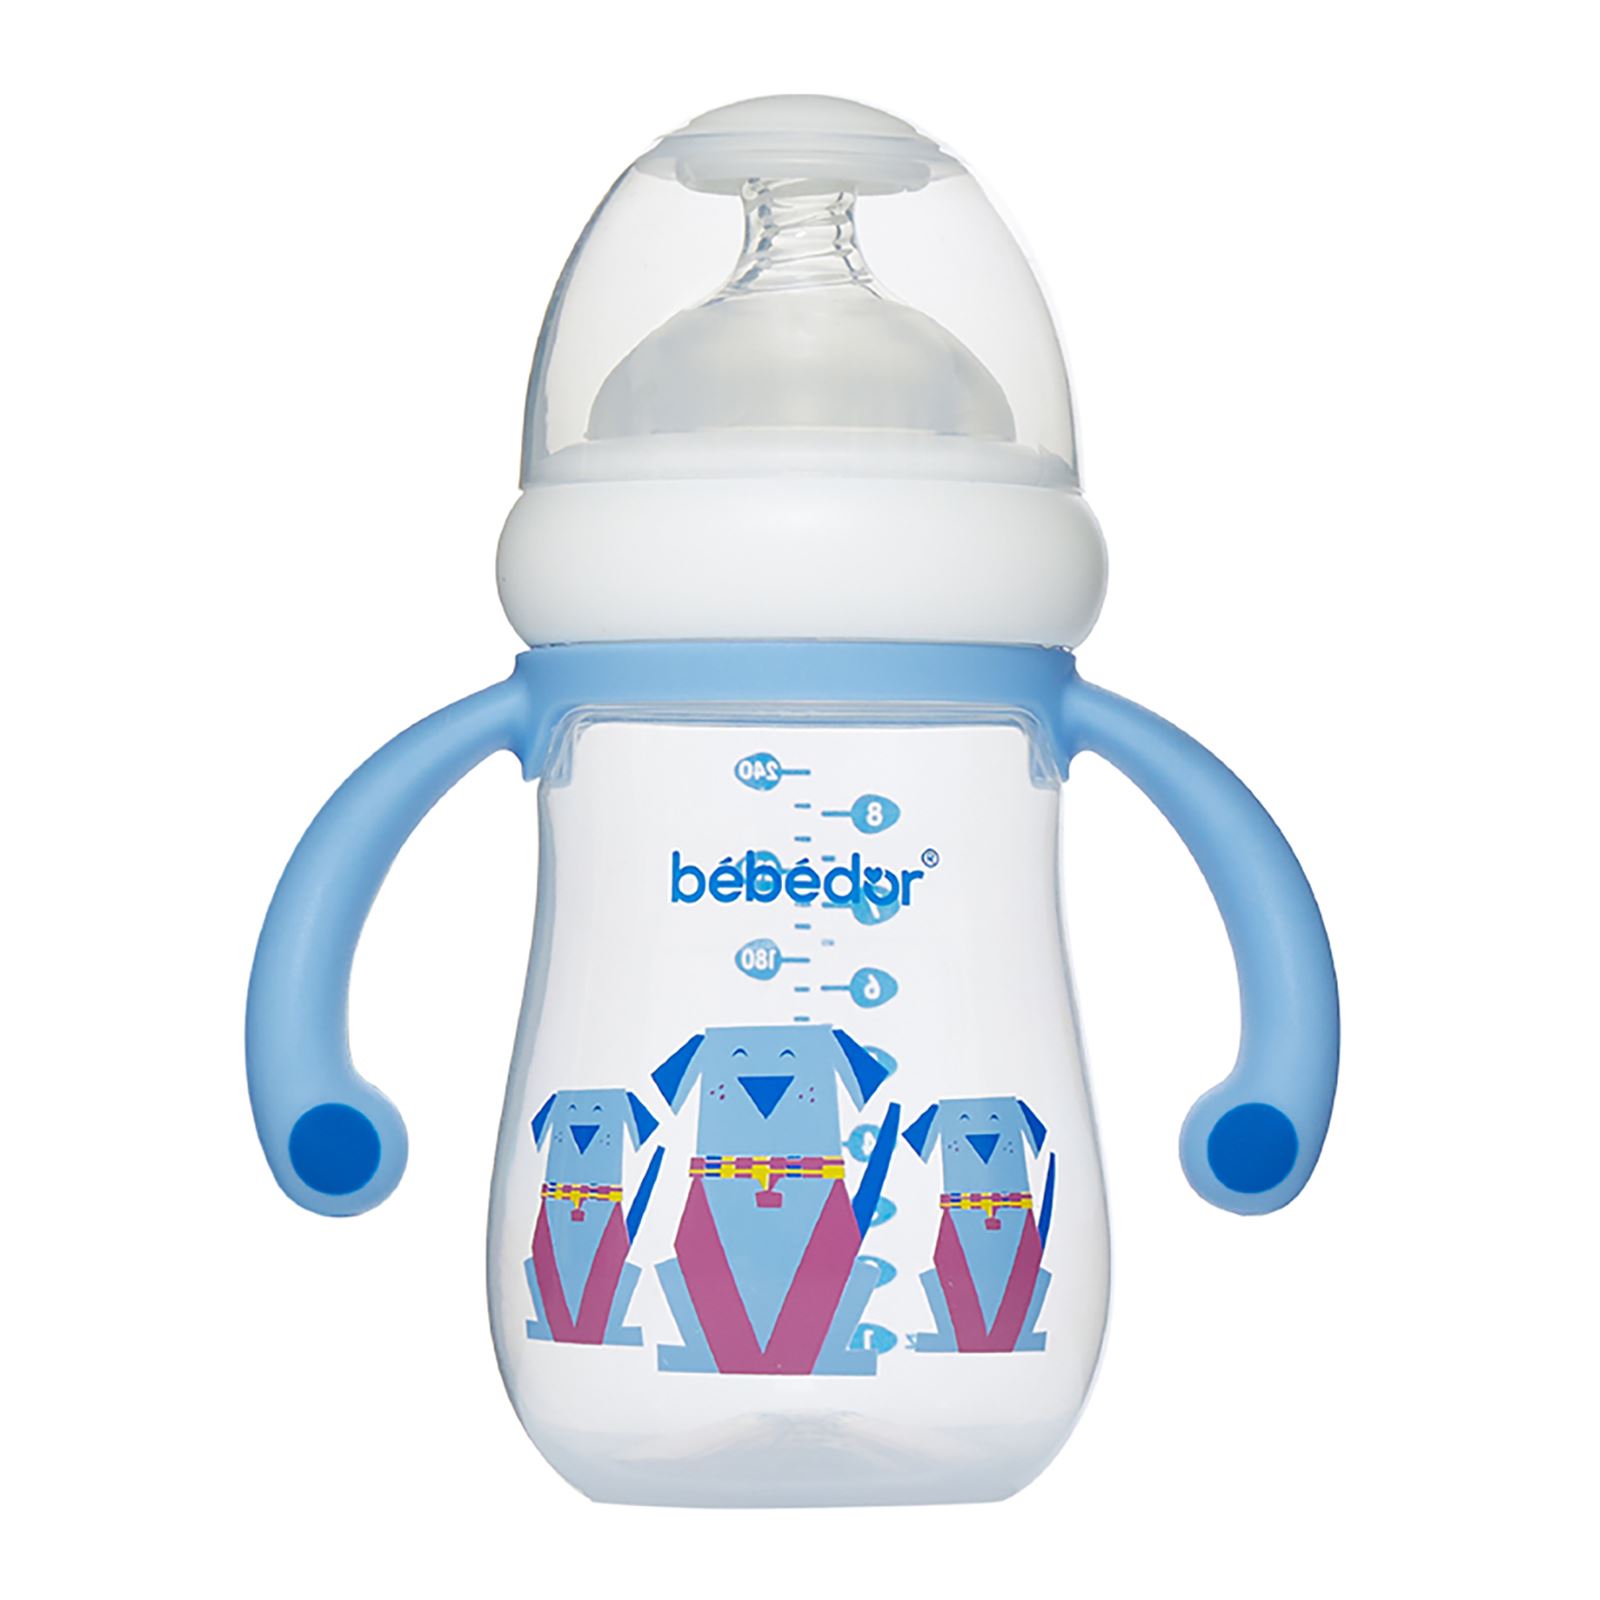 Bebedor Geniş Ağızlı Kulplu PP Biberon 250 ml Mavi